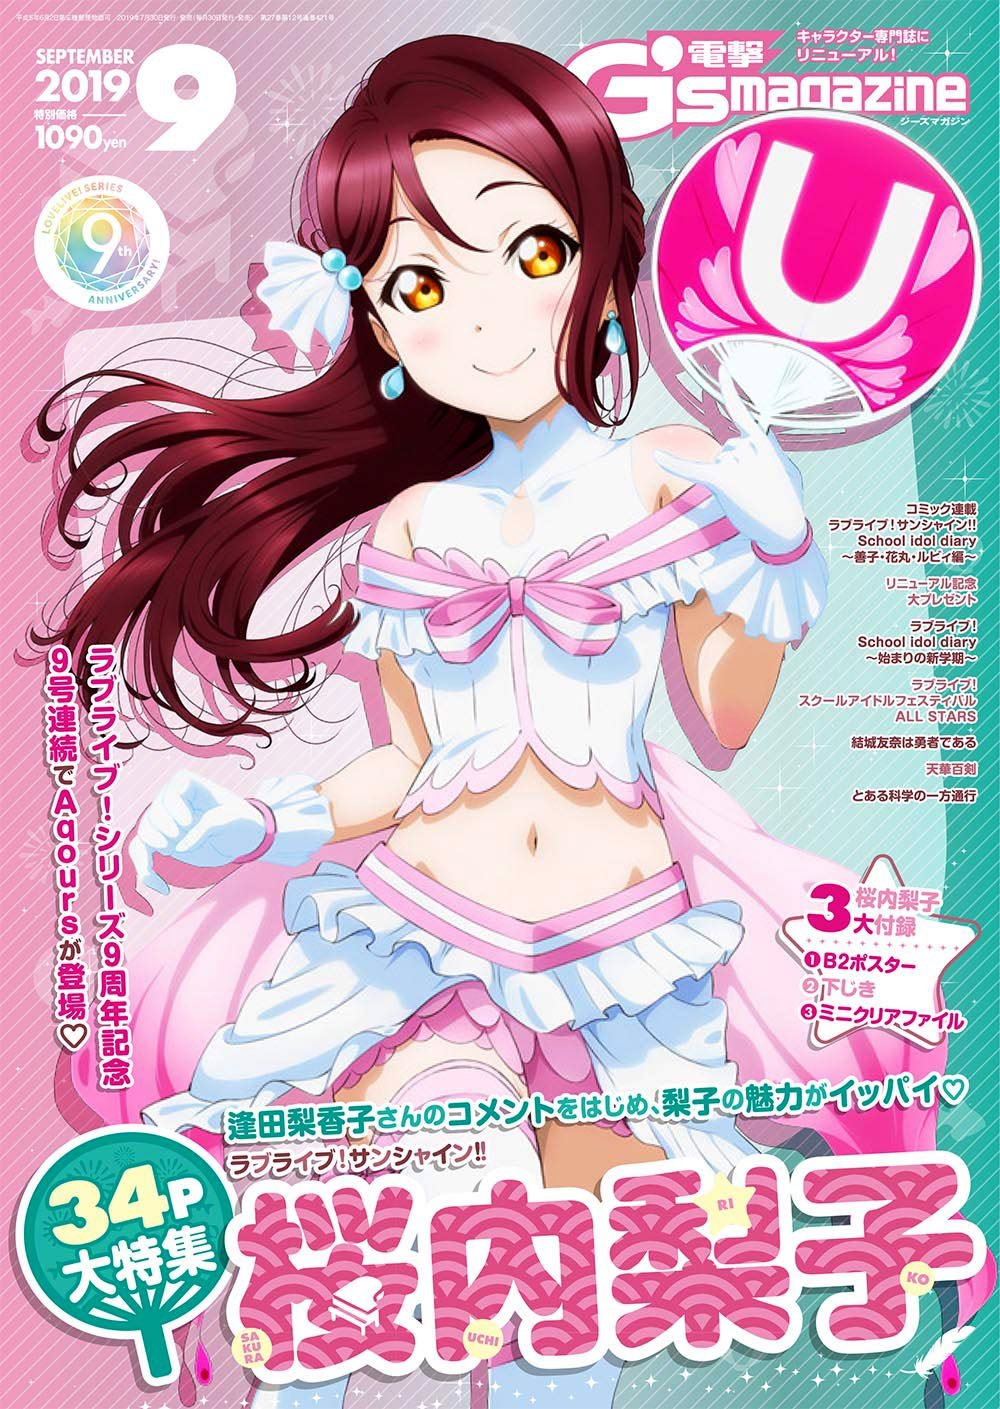 Dengeki G's Magazine Issue 266 (September 2019) (print edition)